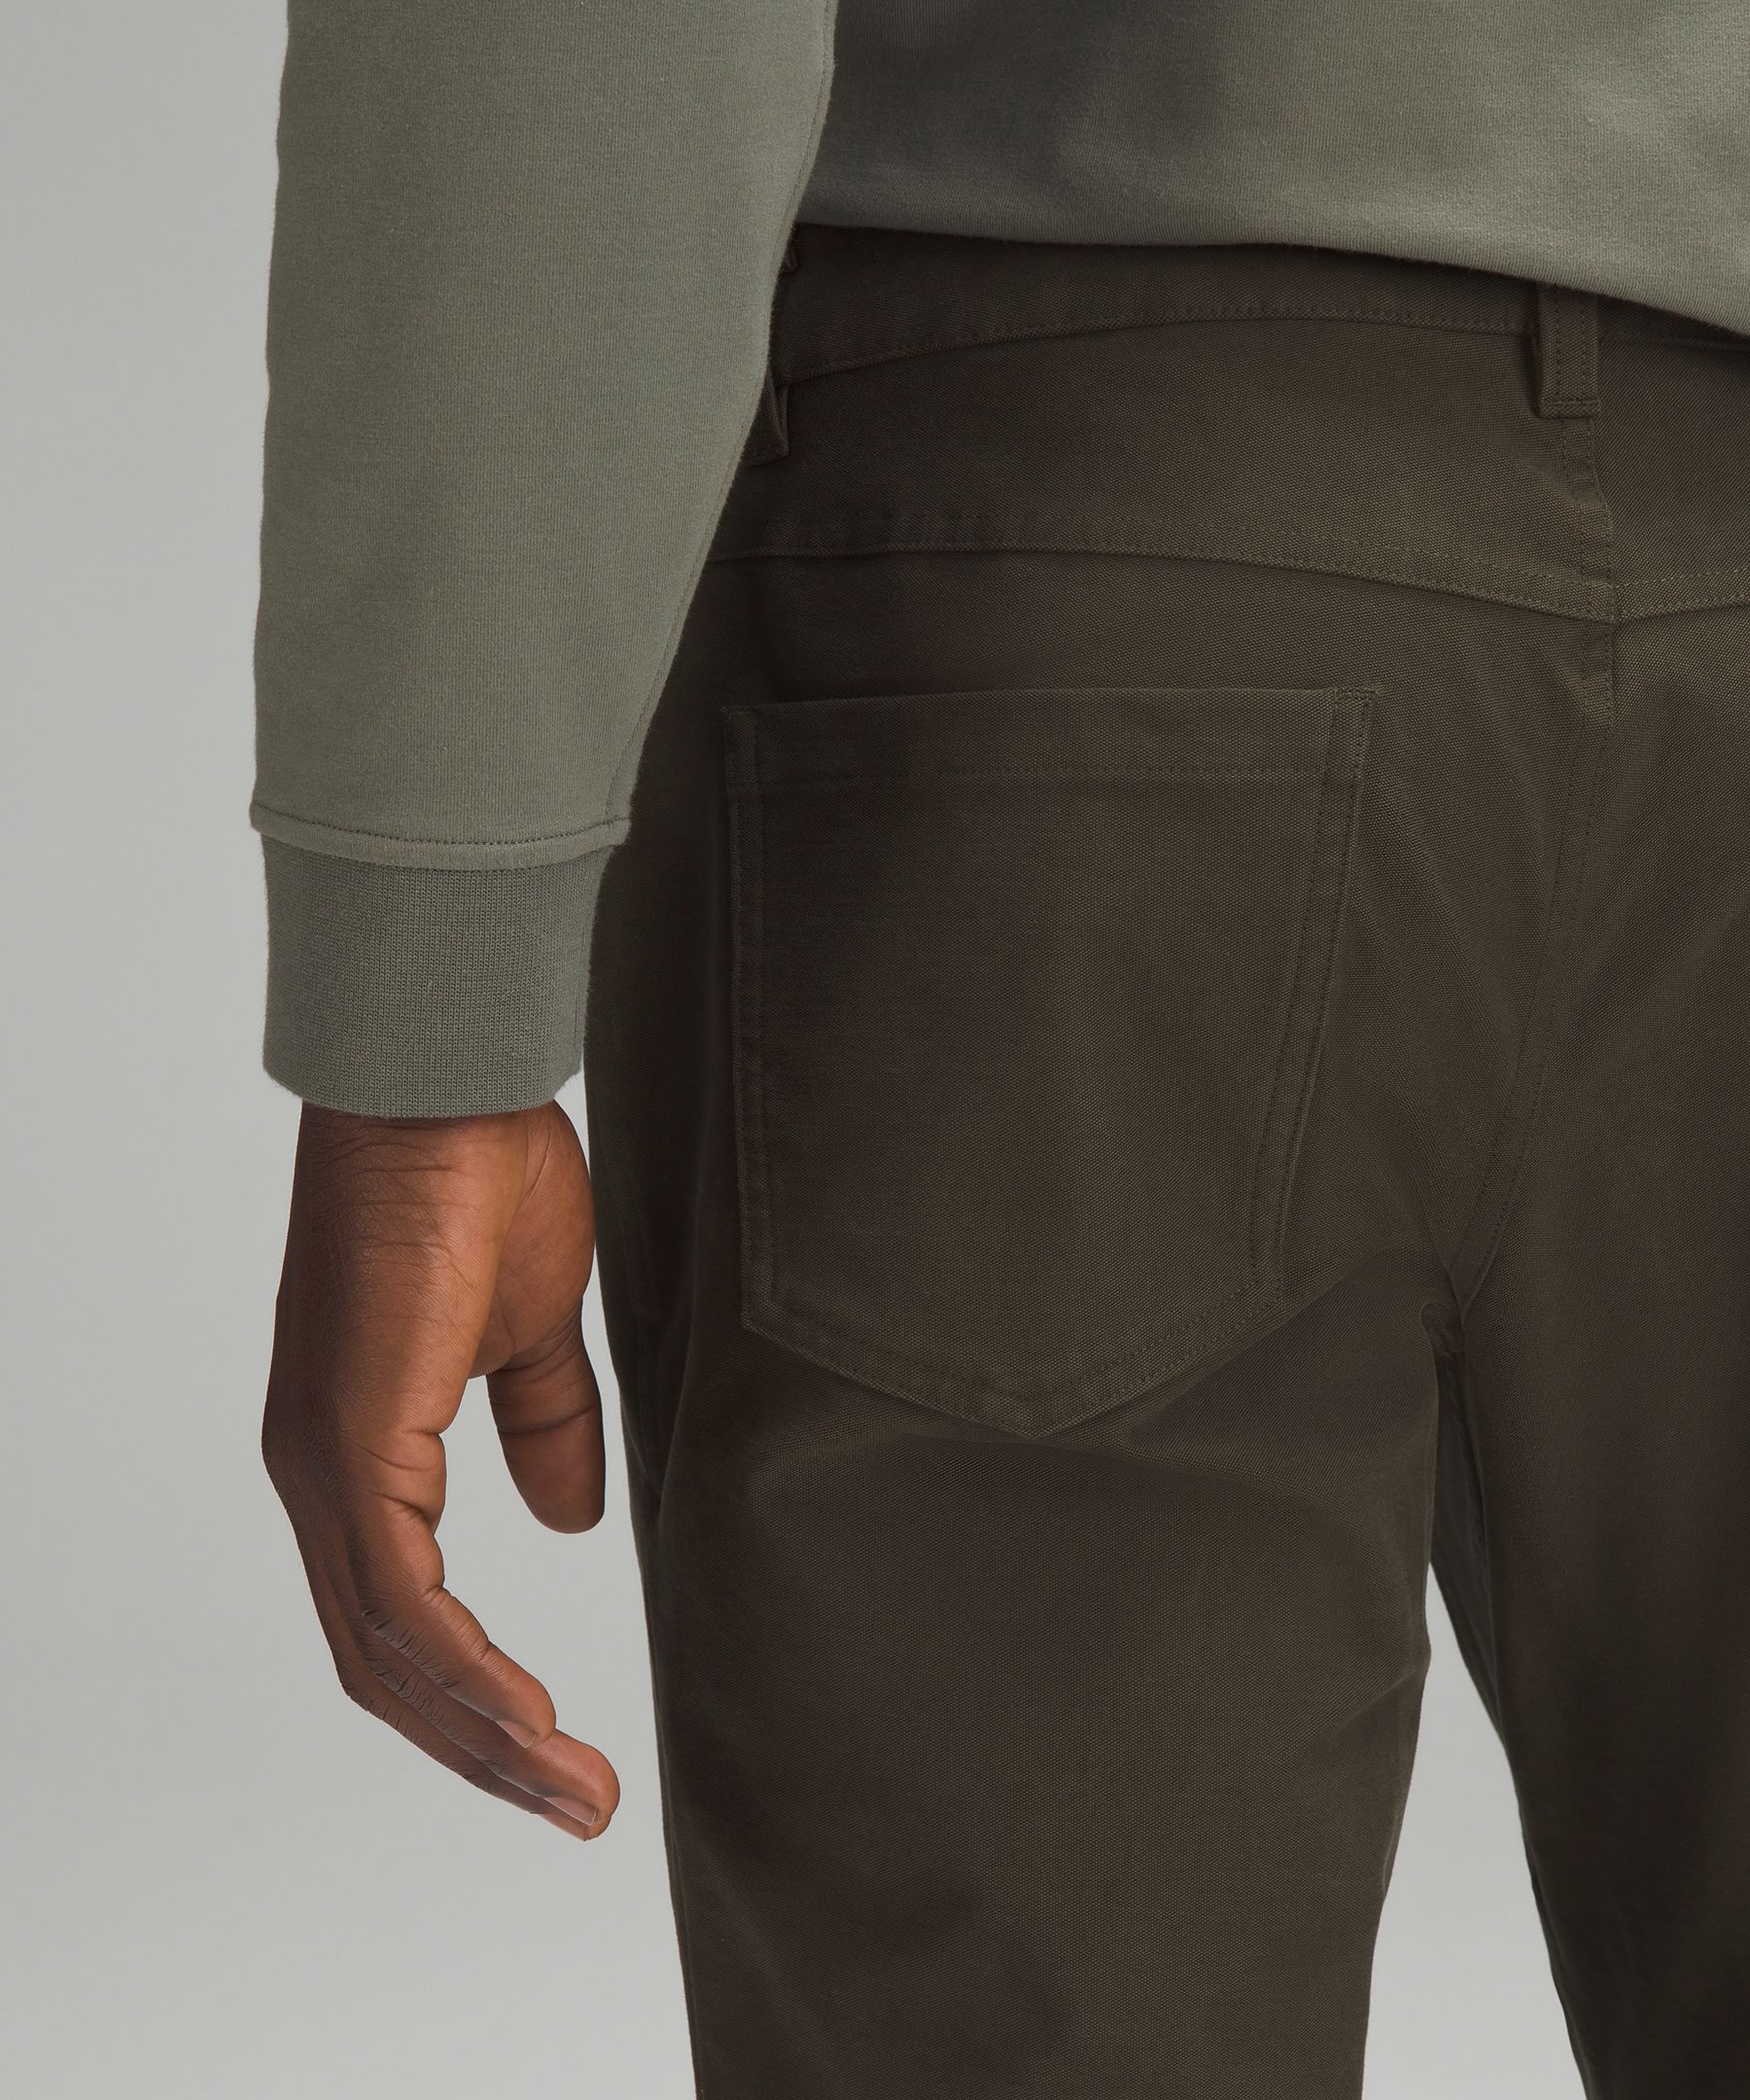 Penn State lululemon ABC Slim 32 Pants